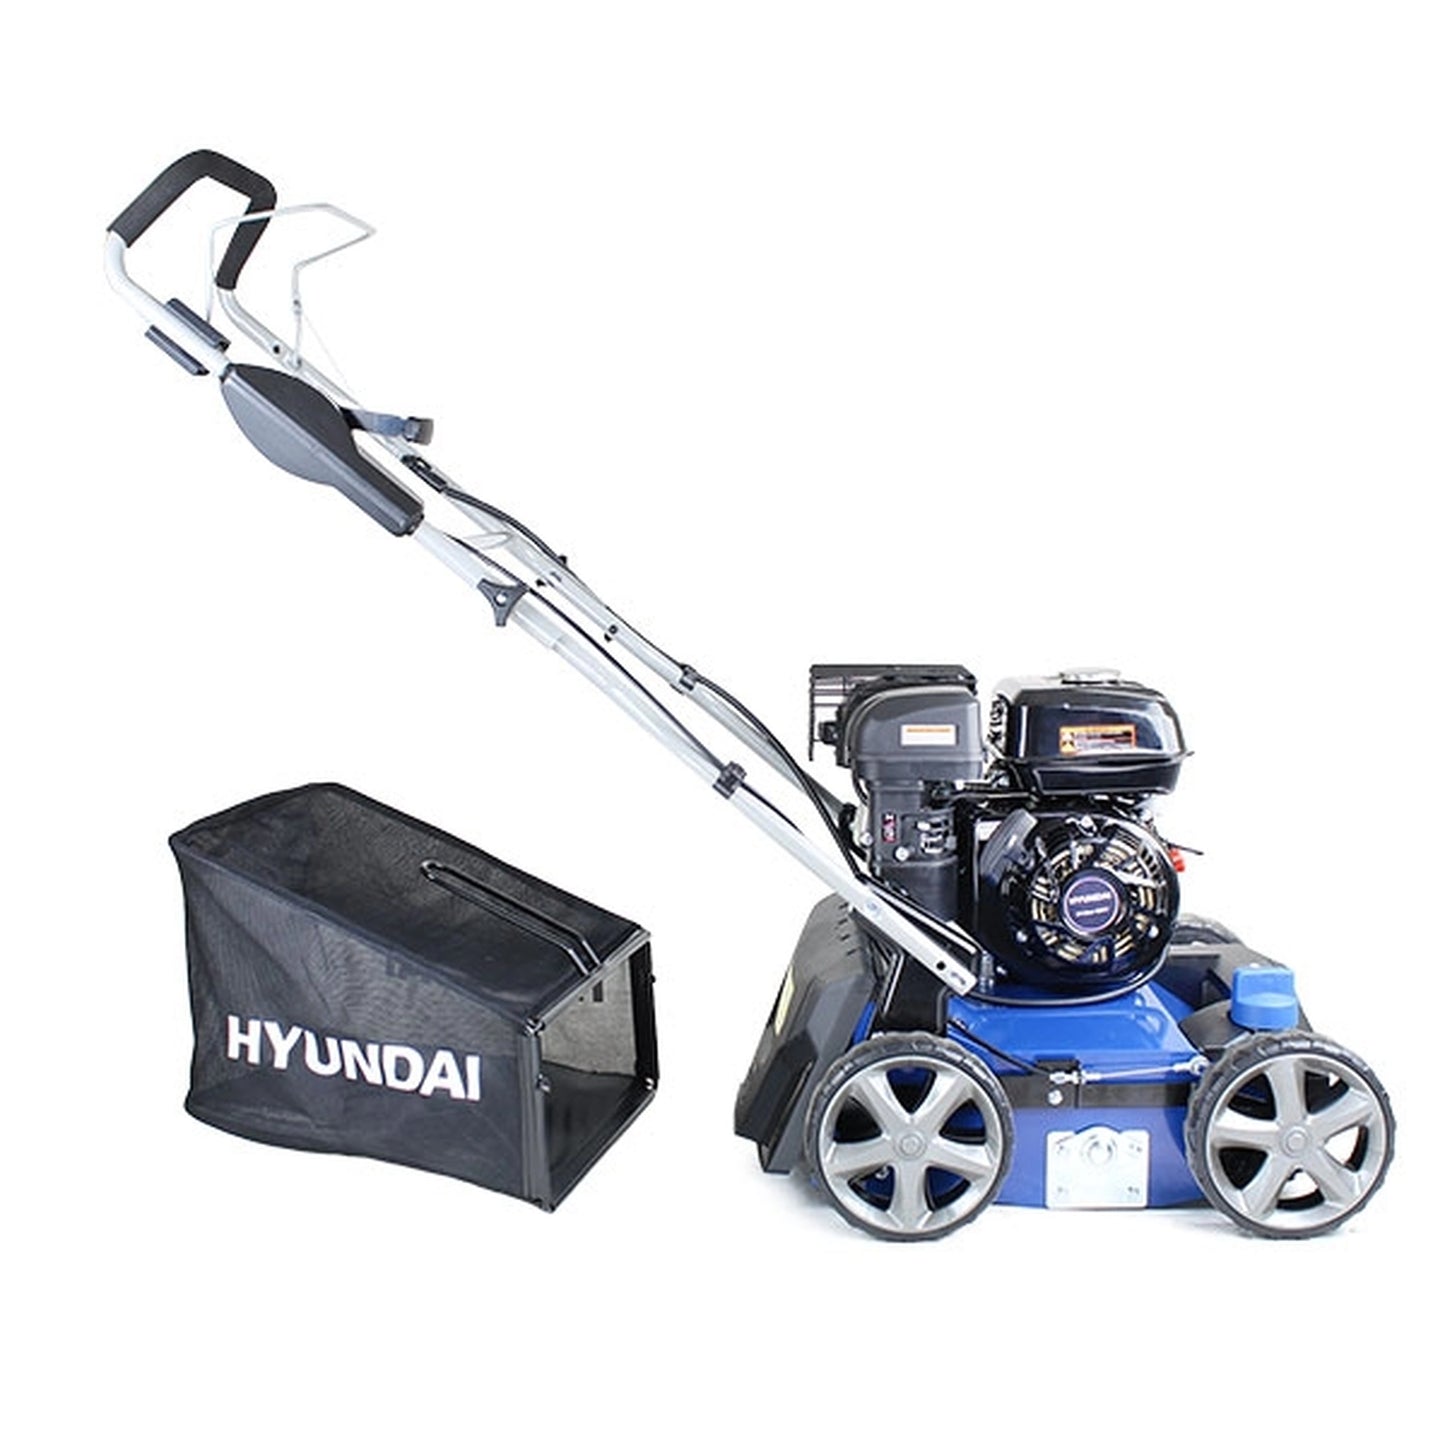 Hyundai HYSC210 Petrol Lawn Scarifier & Aerator